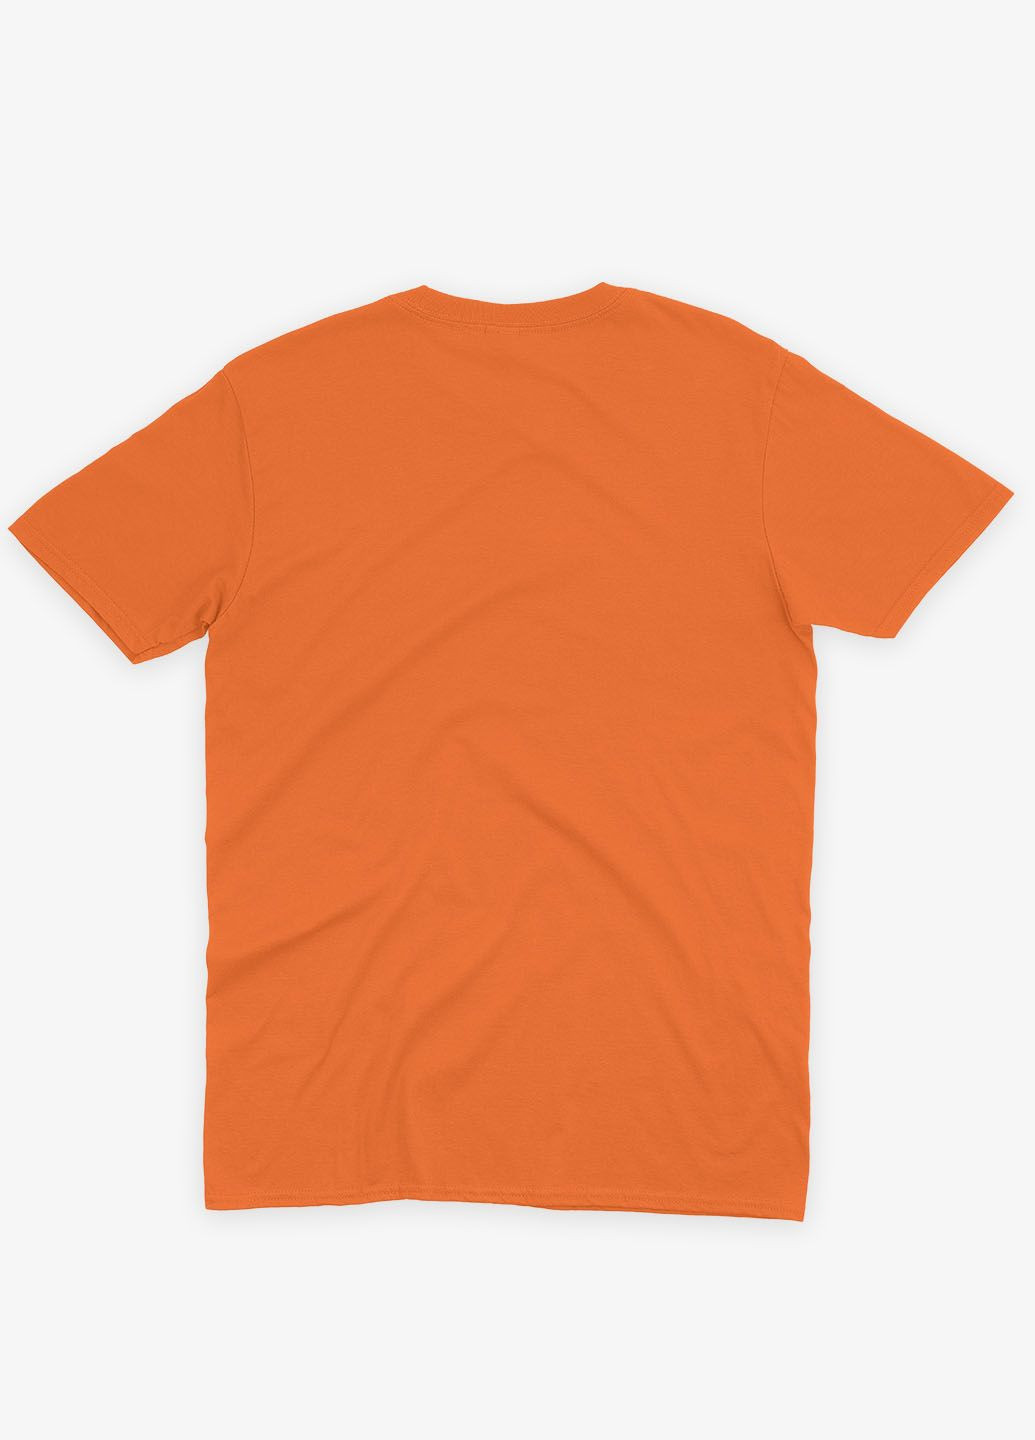 Оранжевая мужская футболка с патриотическим принтом гербтризуб (ts001-5-ora-005-1-121) Modno